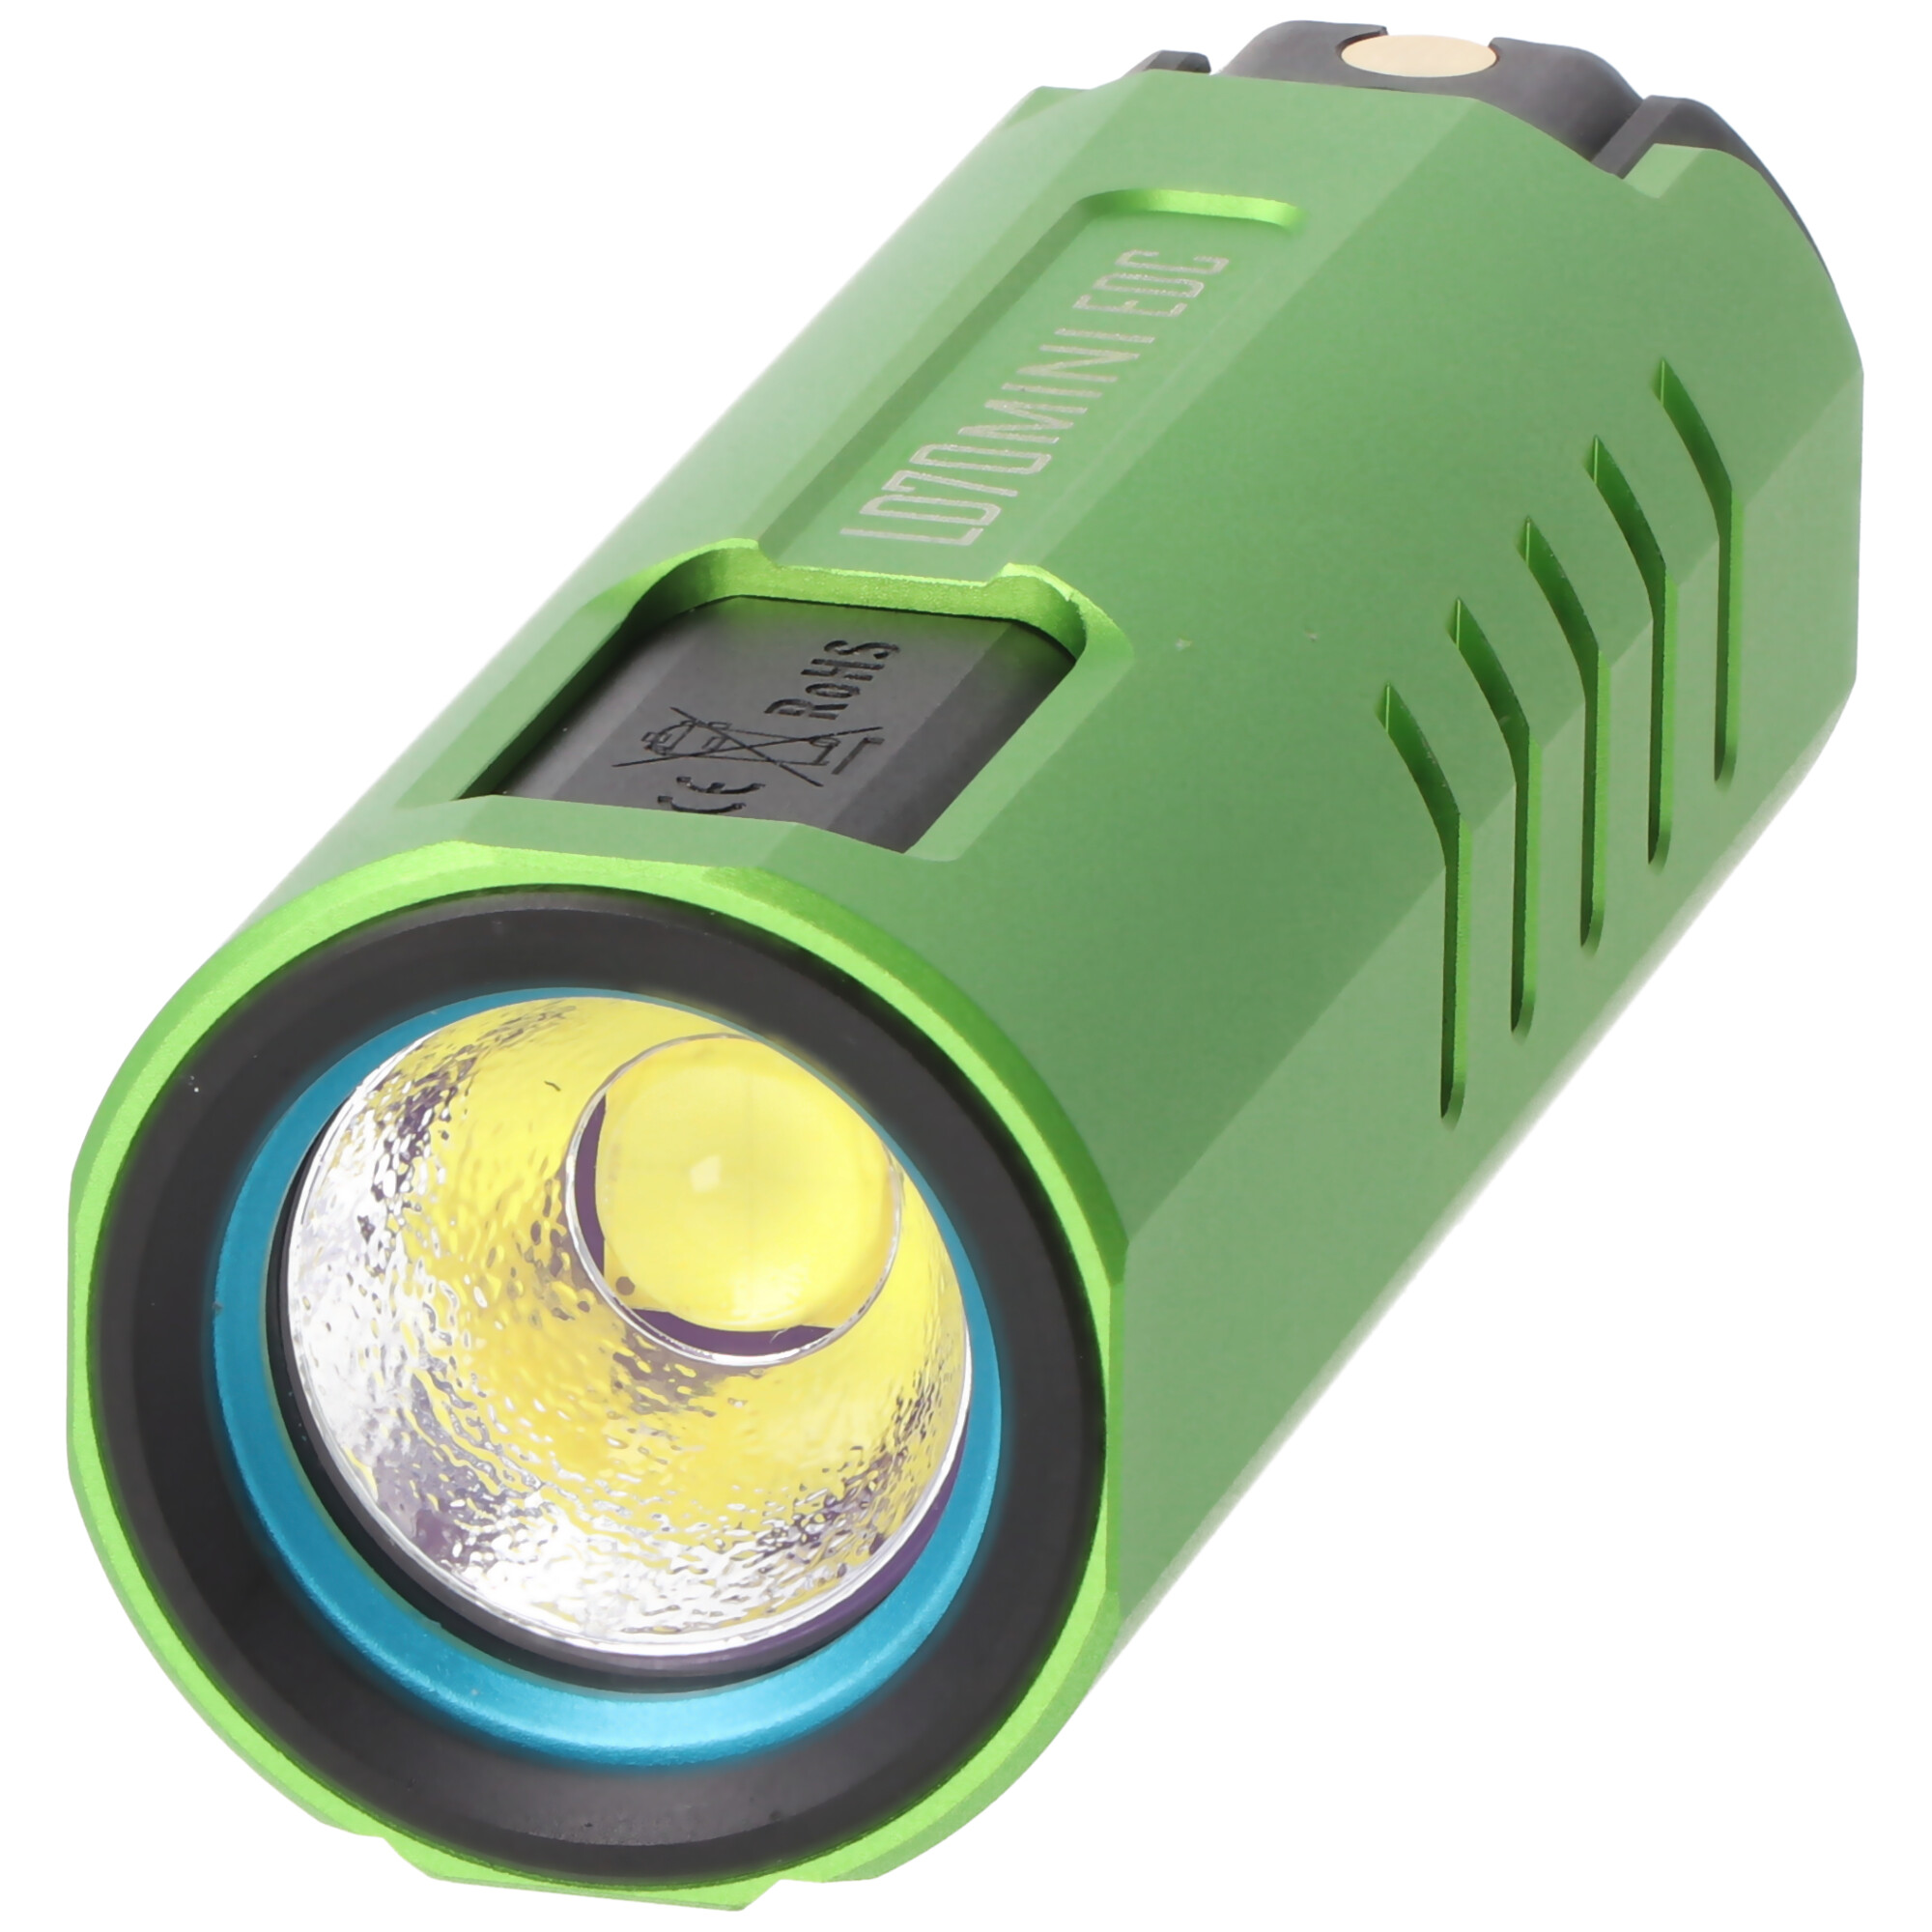 Imalent LD70 Mini EDC LED-Taschenlampe hellgrün mit 4000 Lumen, Leuchtweite max. 203 Meter